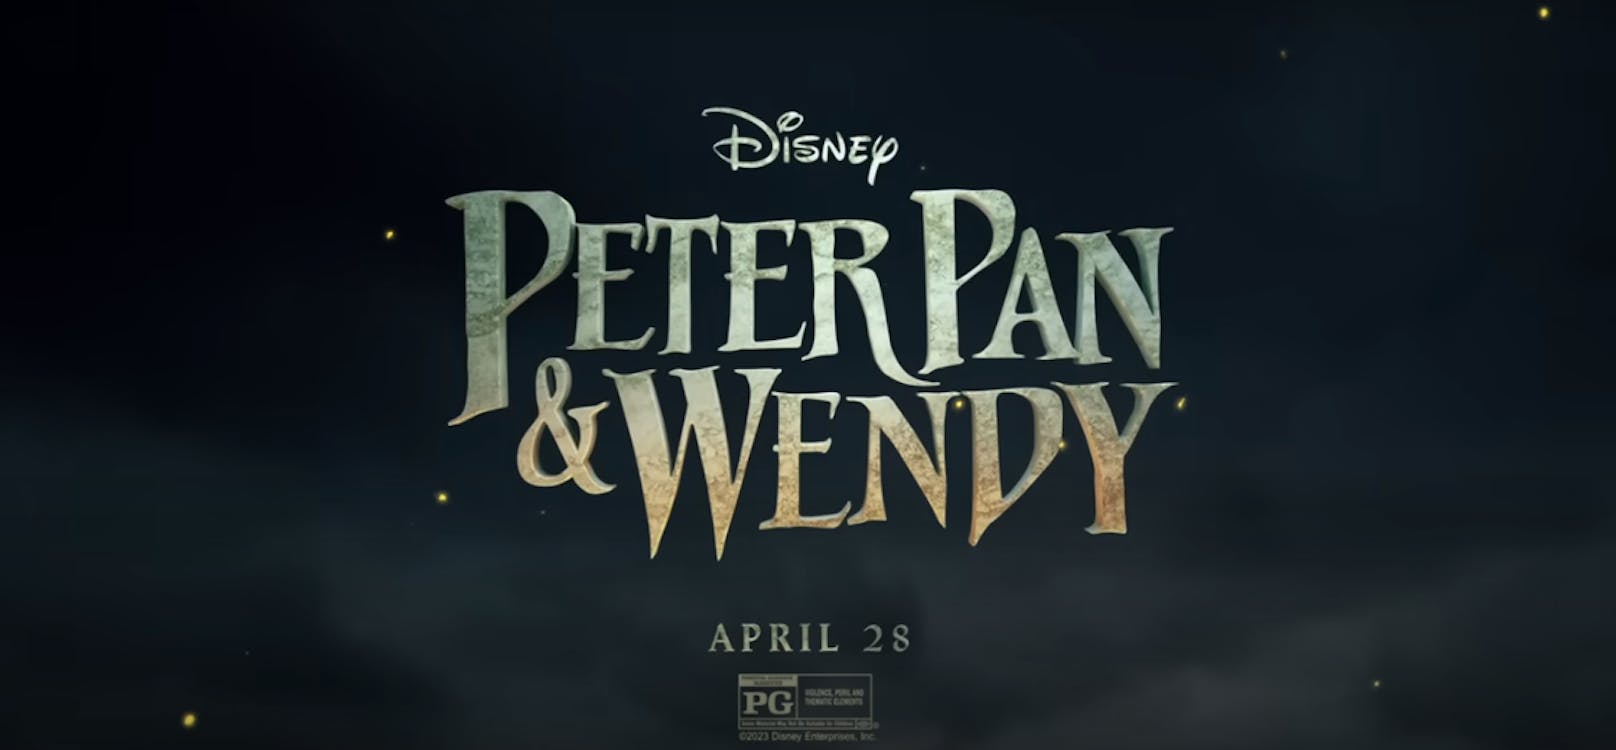 Der erste Trailer für "Peter Pan & Wendy" wurde veröffentlicht.